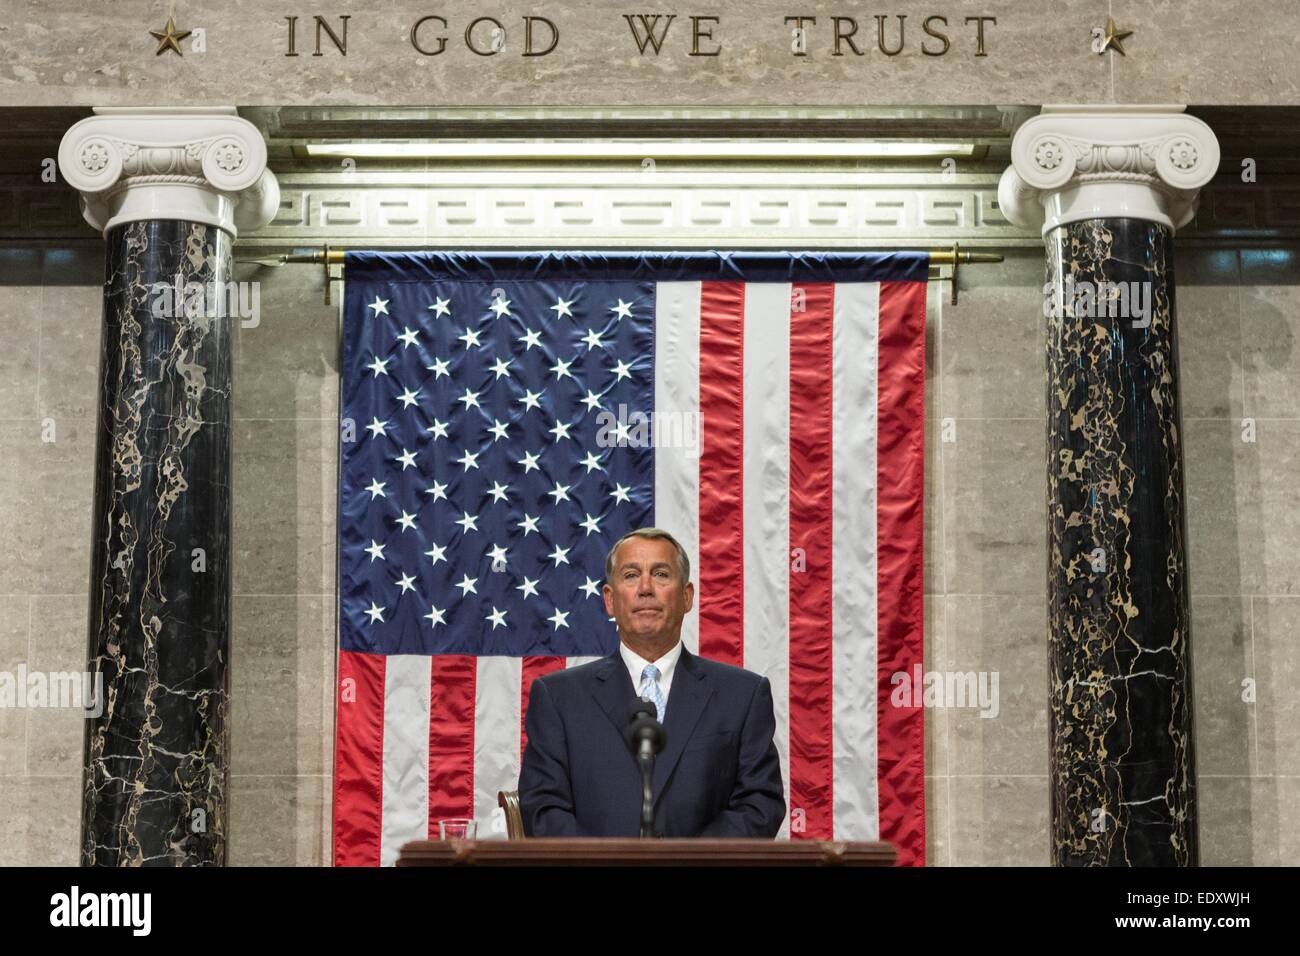 US-Sprecher des Hauses John Boehner führt den Vorsitz in der Eröffnungssitzung des 114. Kongresses der Vereinigten Staaten 6. Januar 2015 Washington, DC. Stockfoto